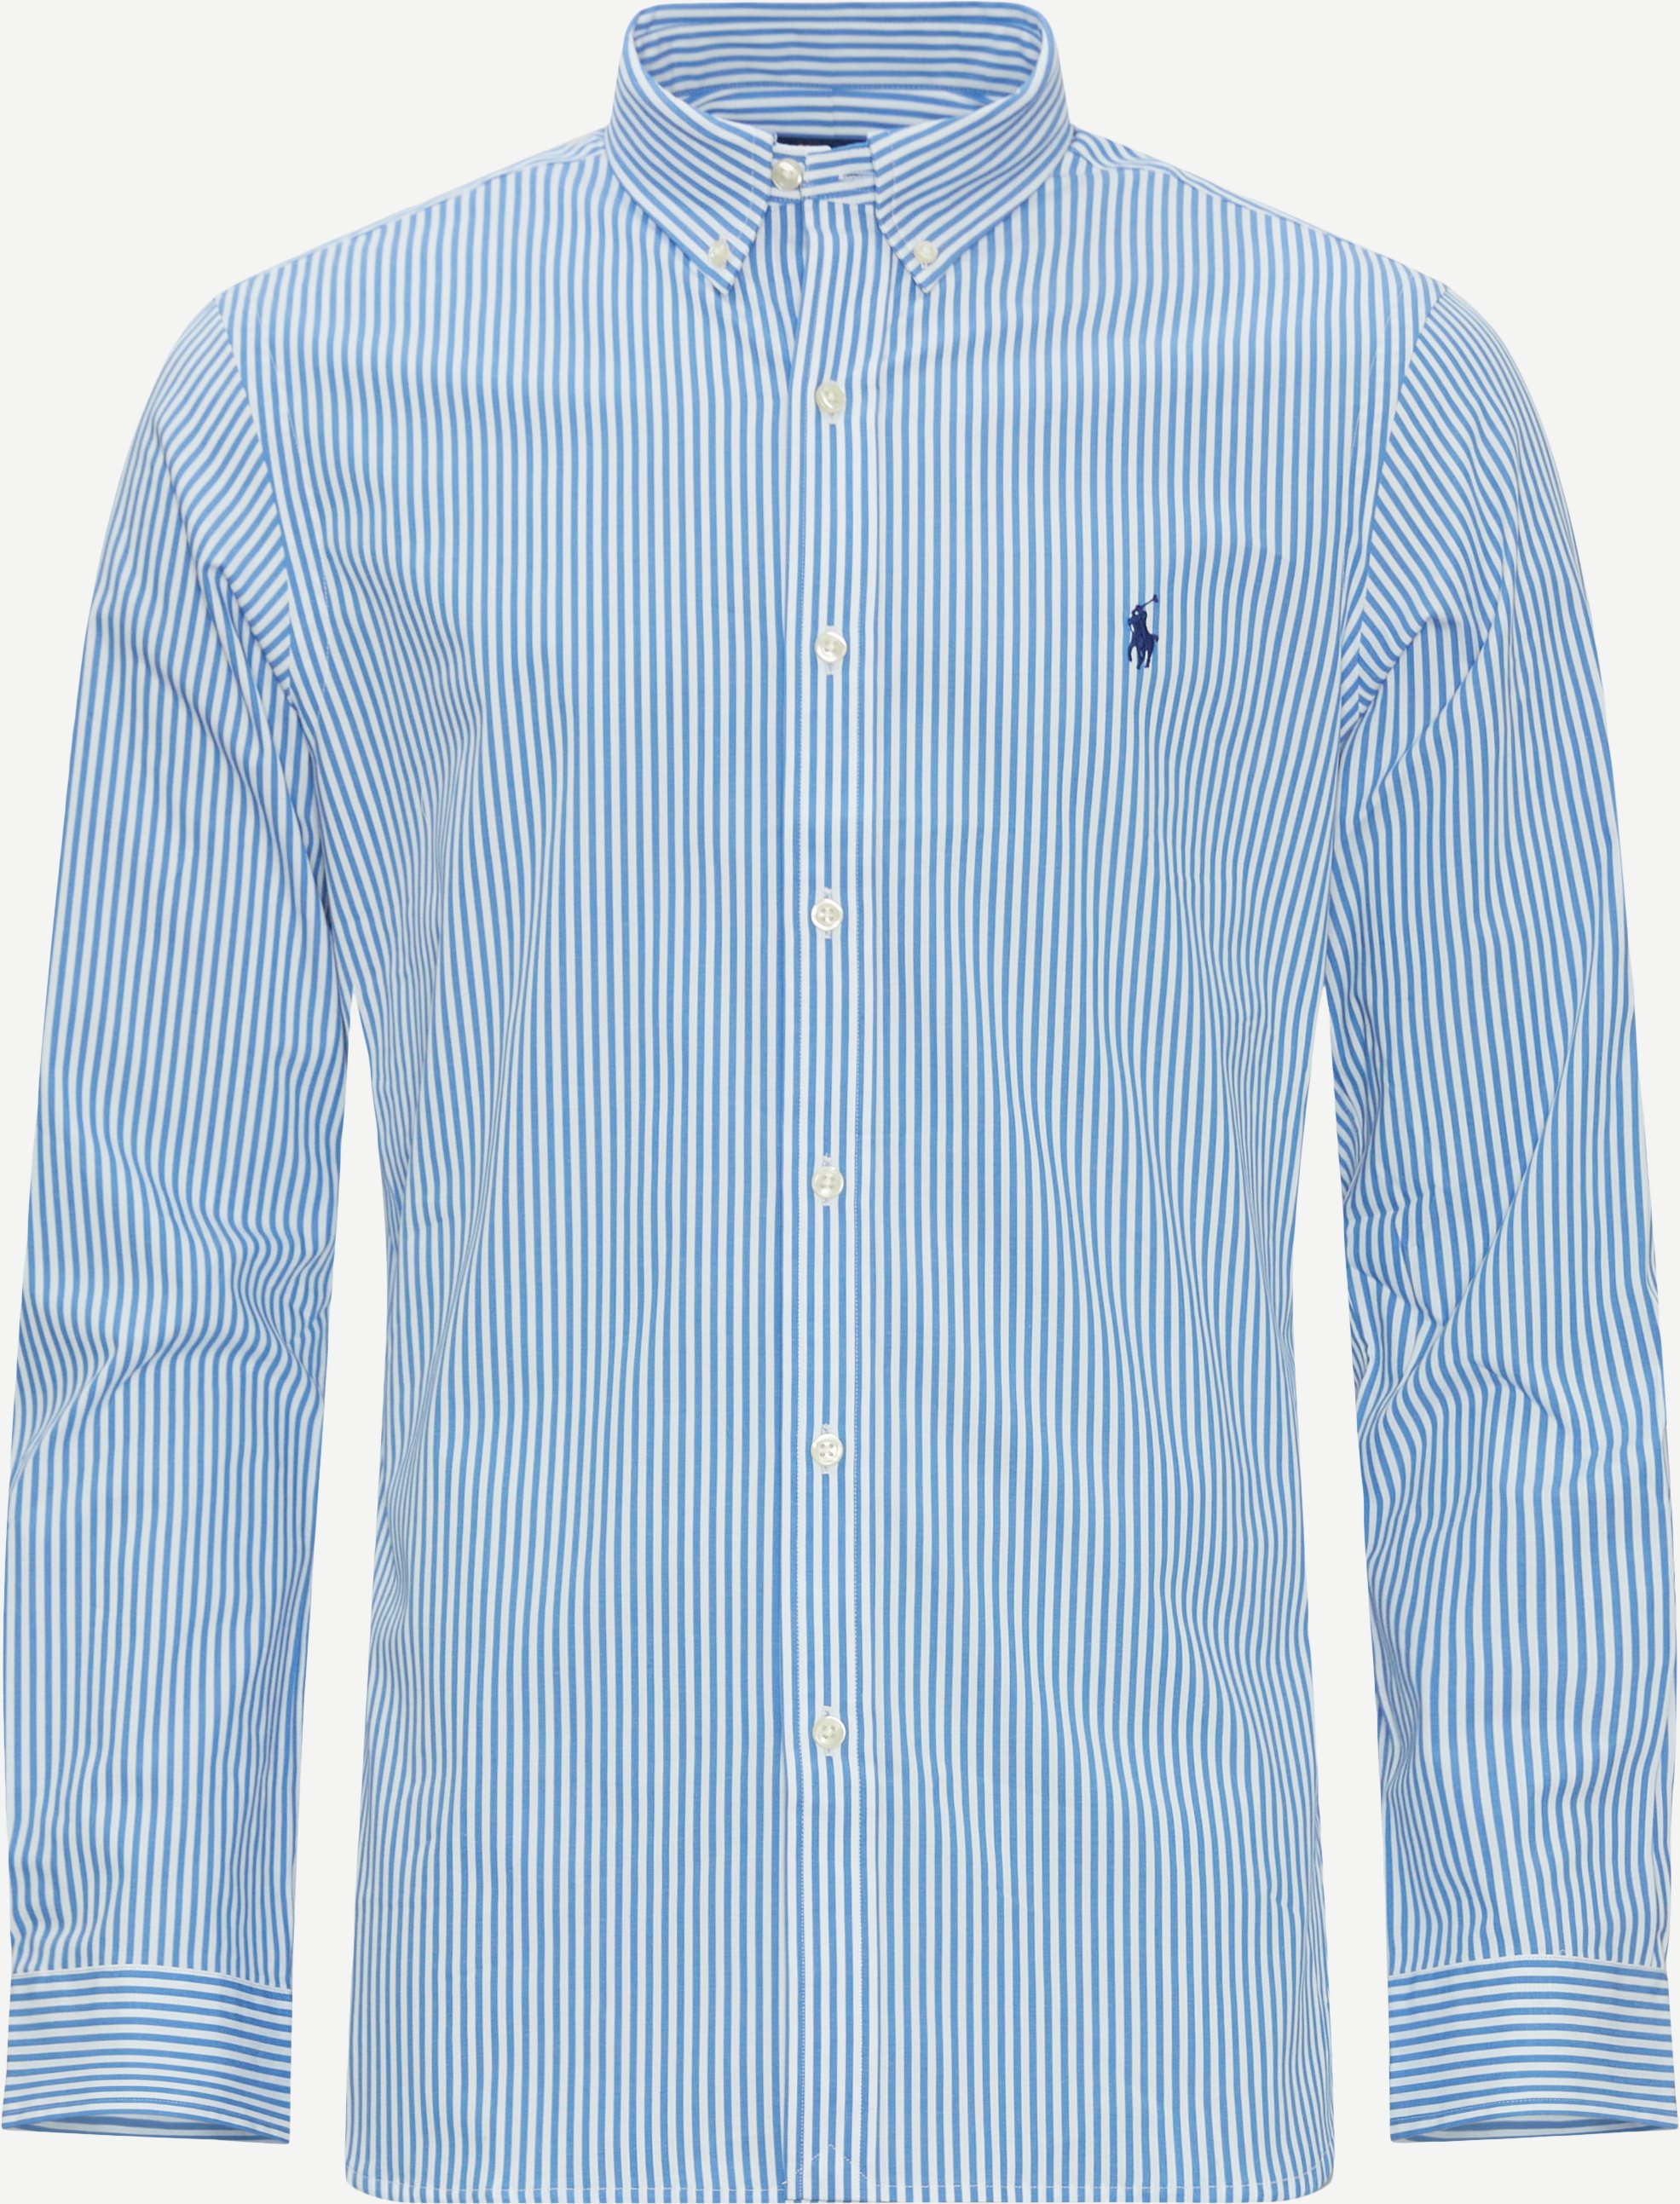 Polo Ralph Lauren Shirts 710929344 Blue